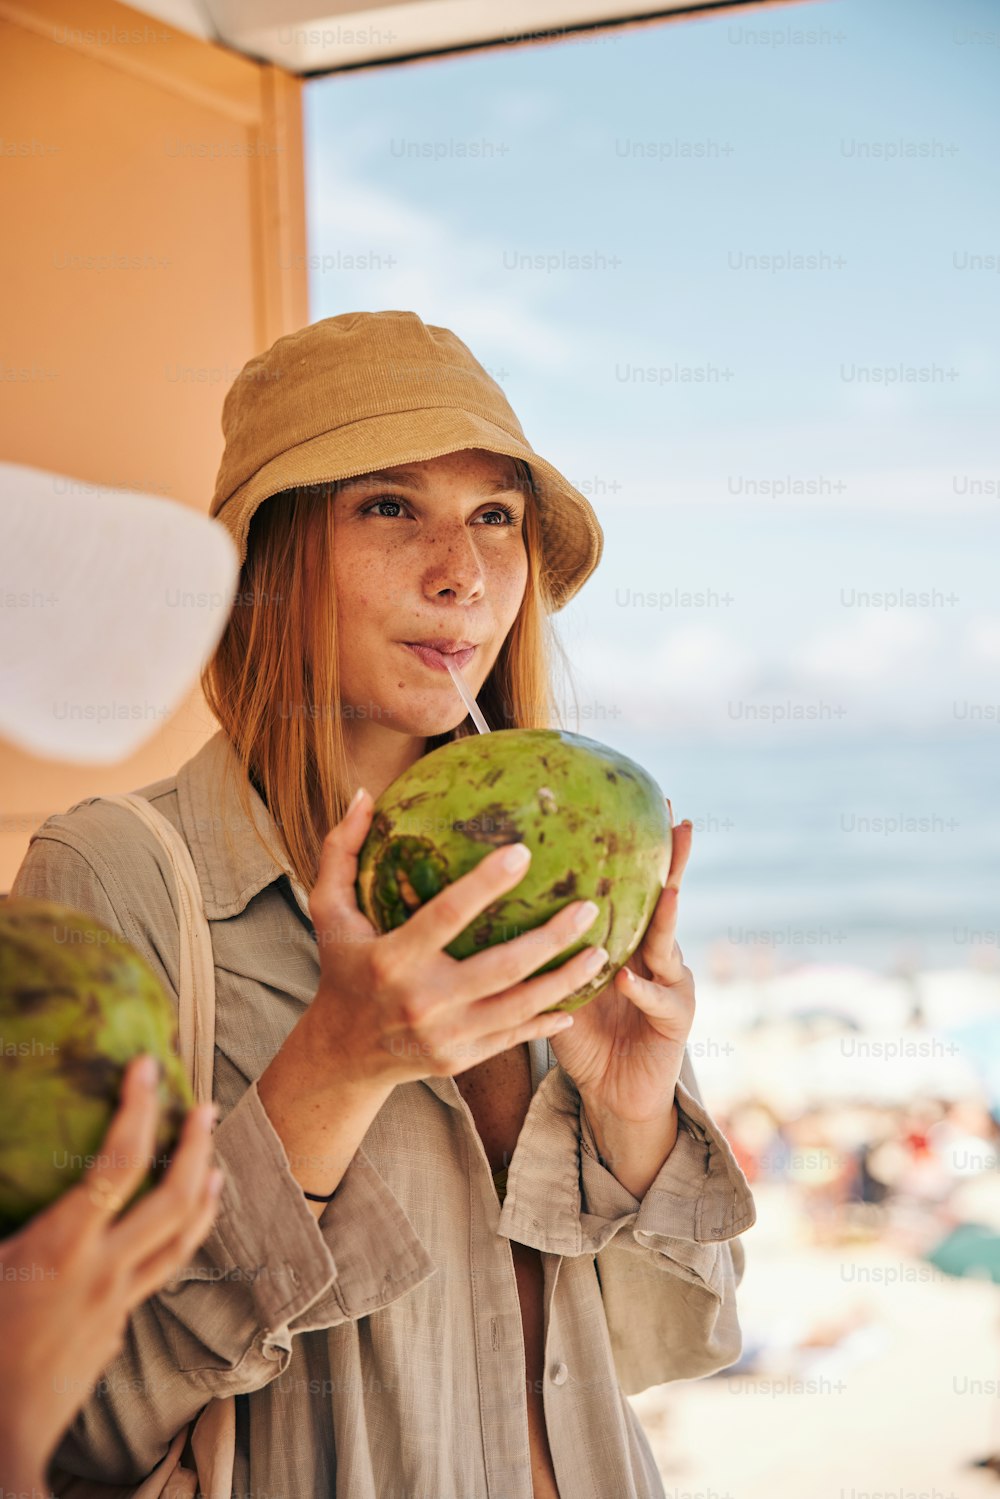 Eine Frau mit Hut, die eine grüne Frucht hält